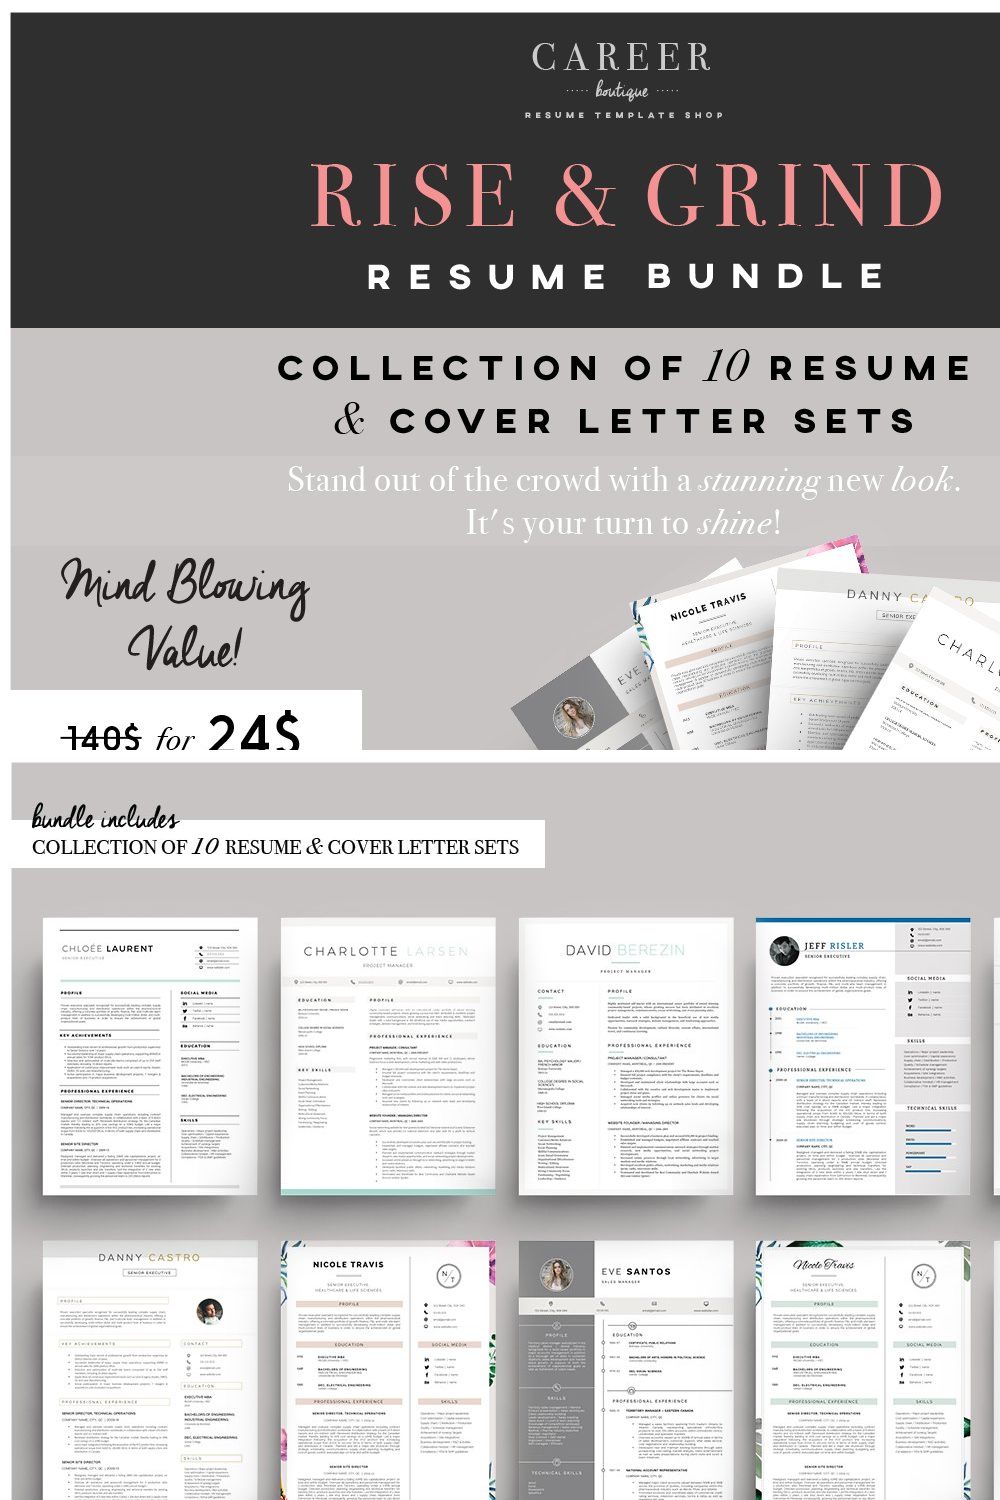 Rise & Grind-Resume & letter Bundle pinterest preview image.